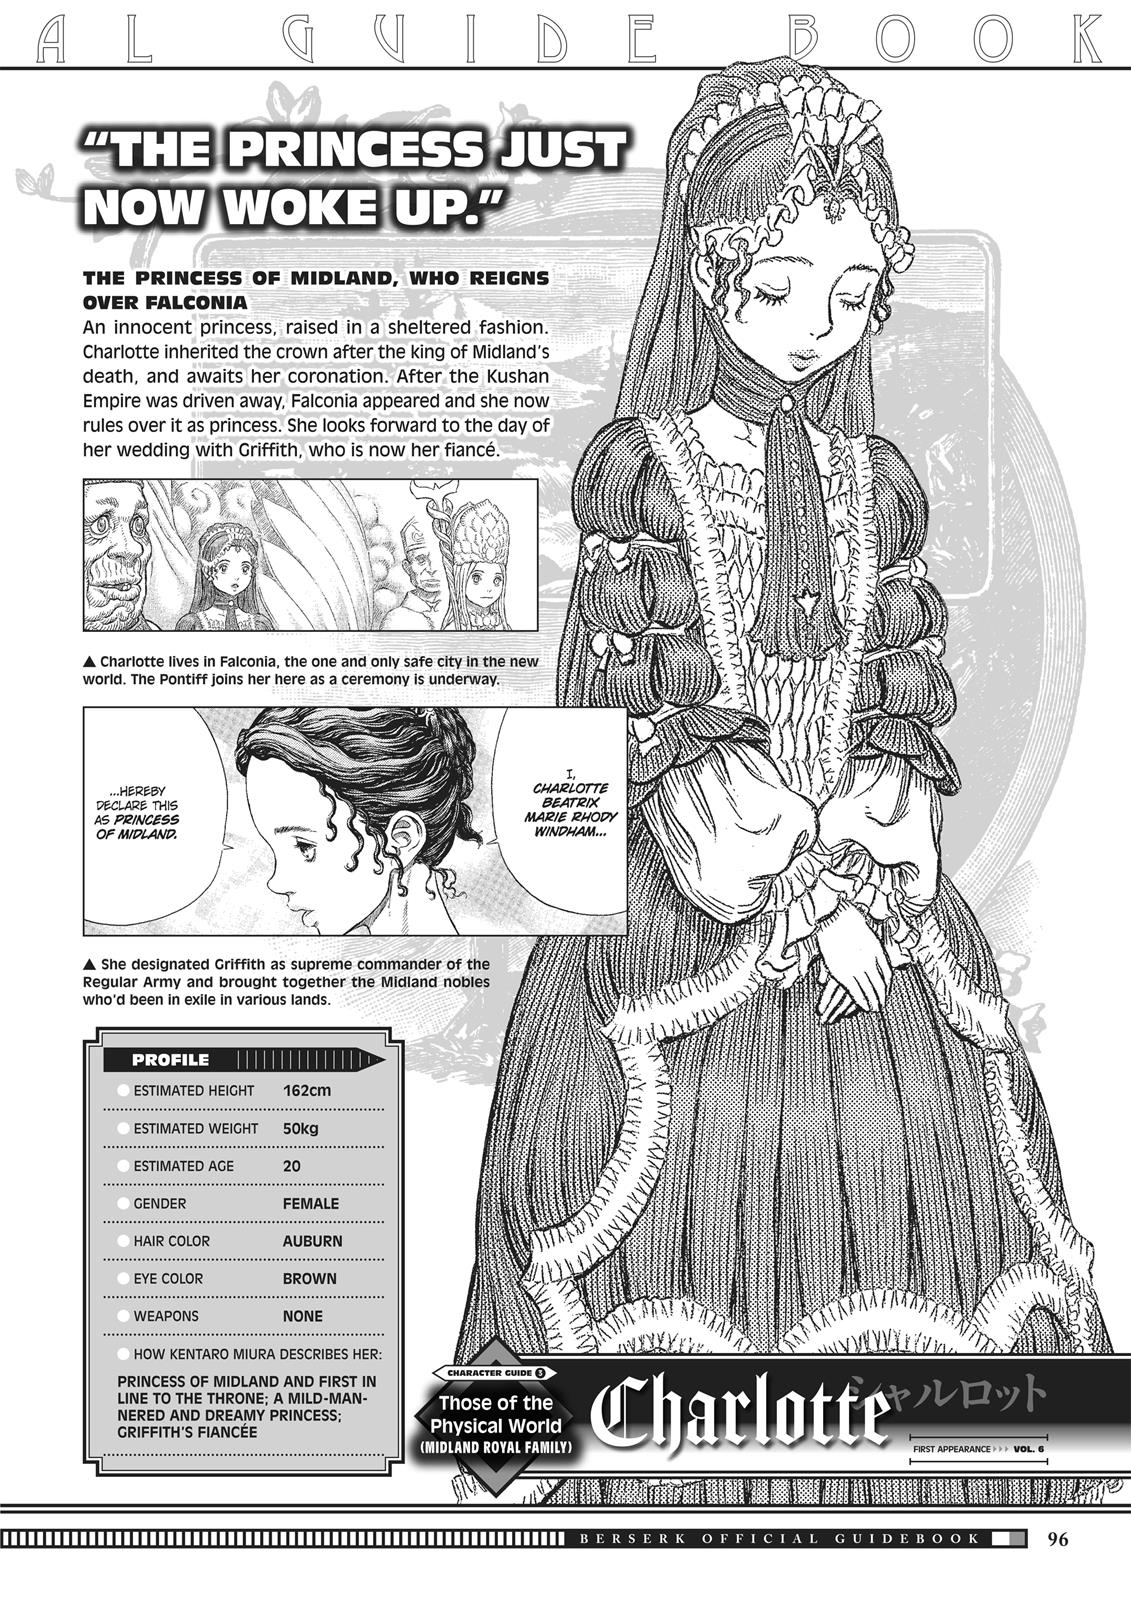 Berserk Manga Chapter 350.5 image 094